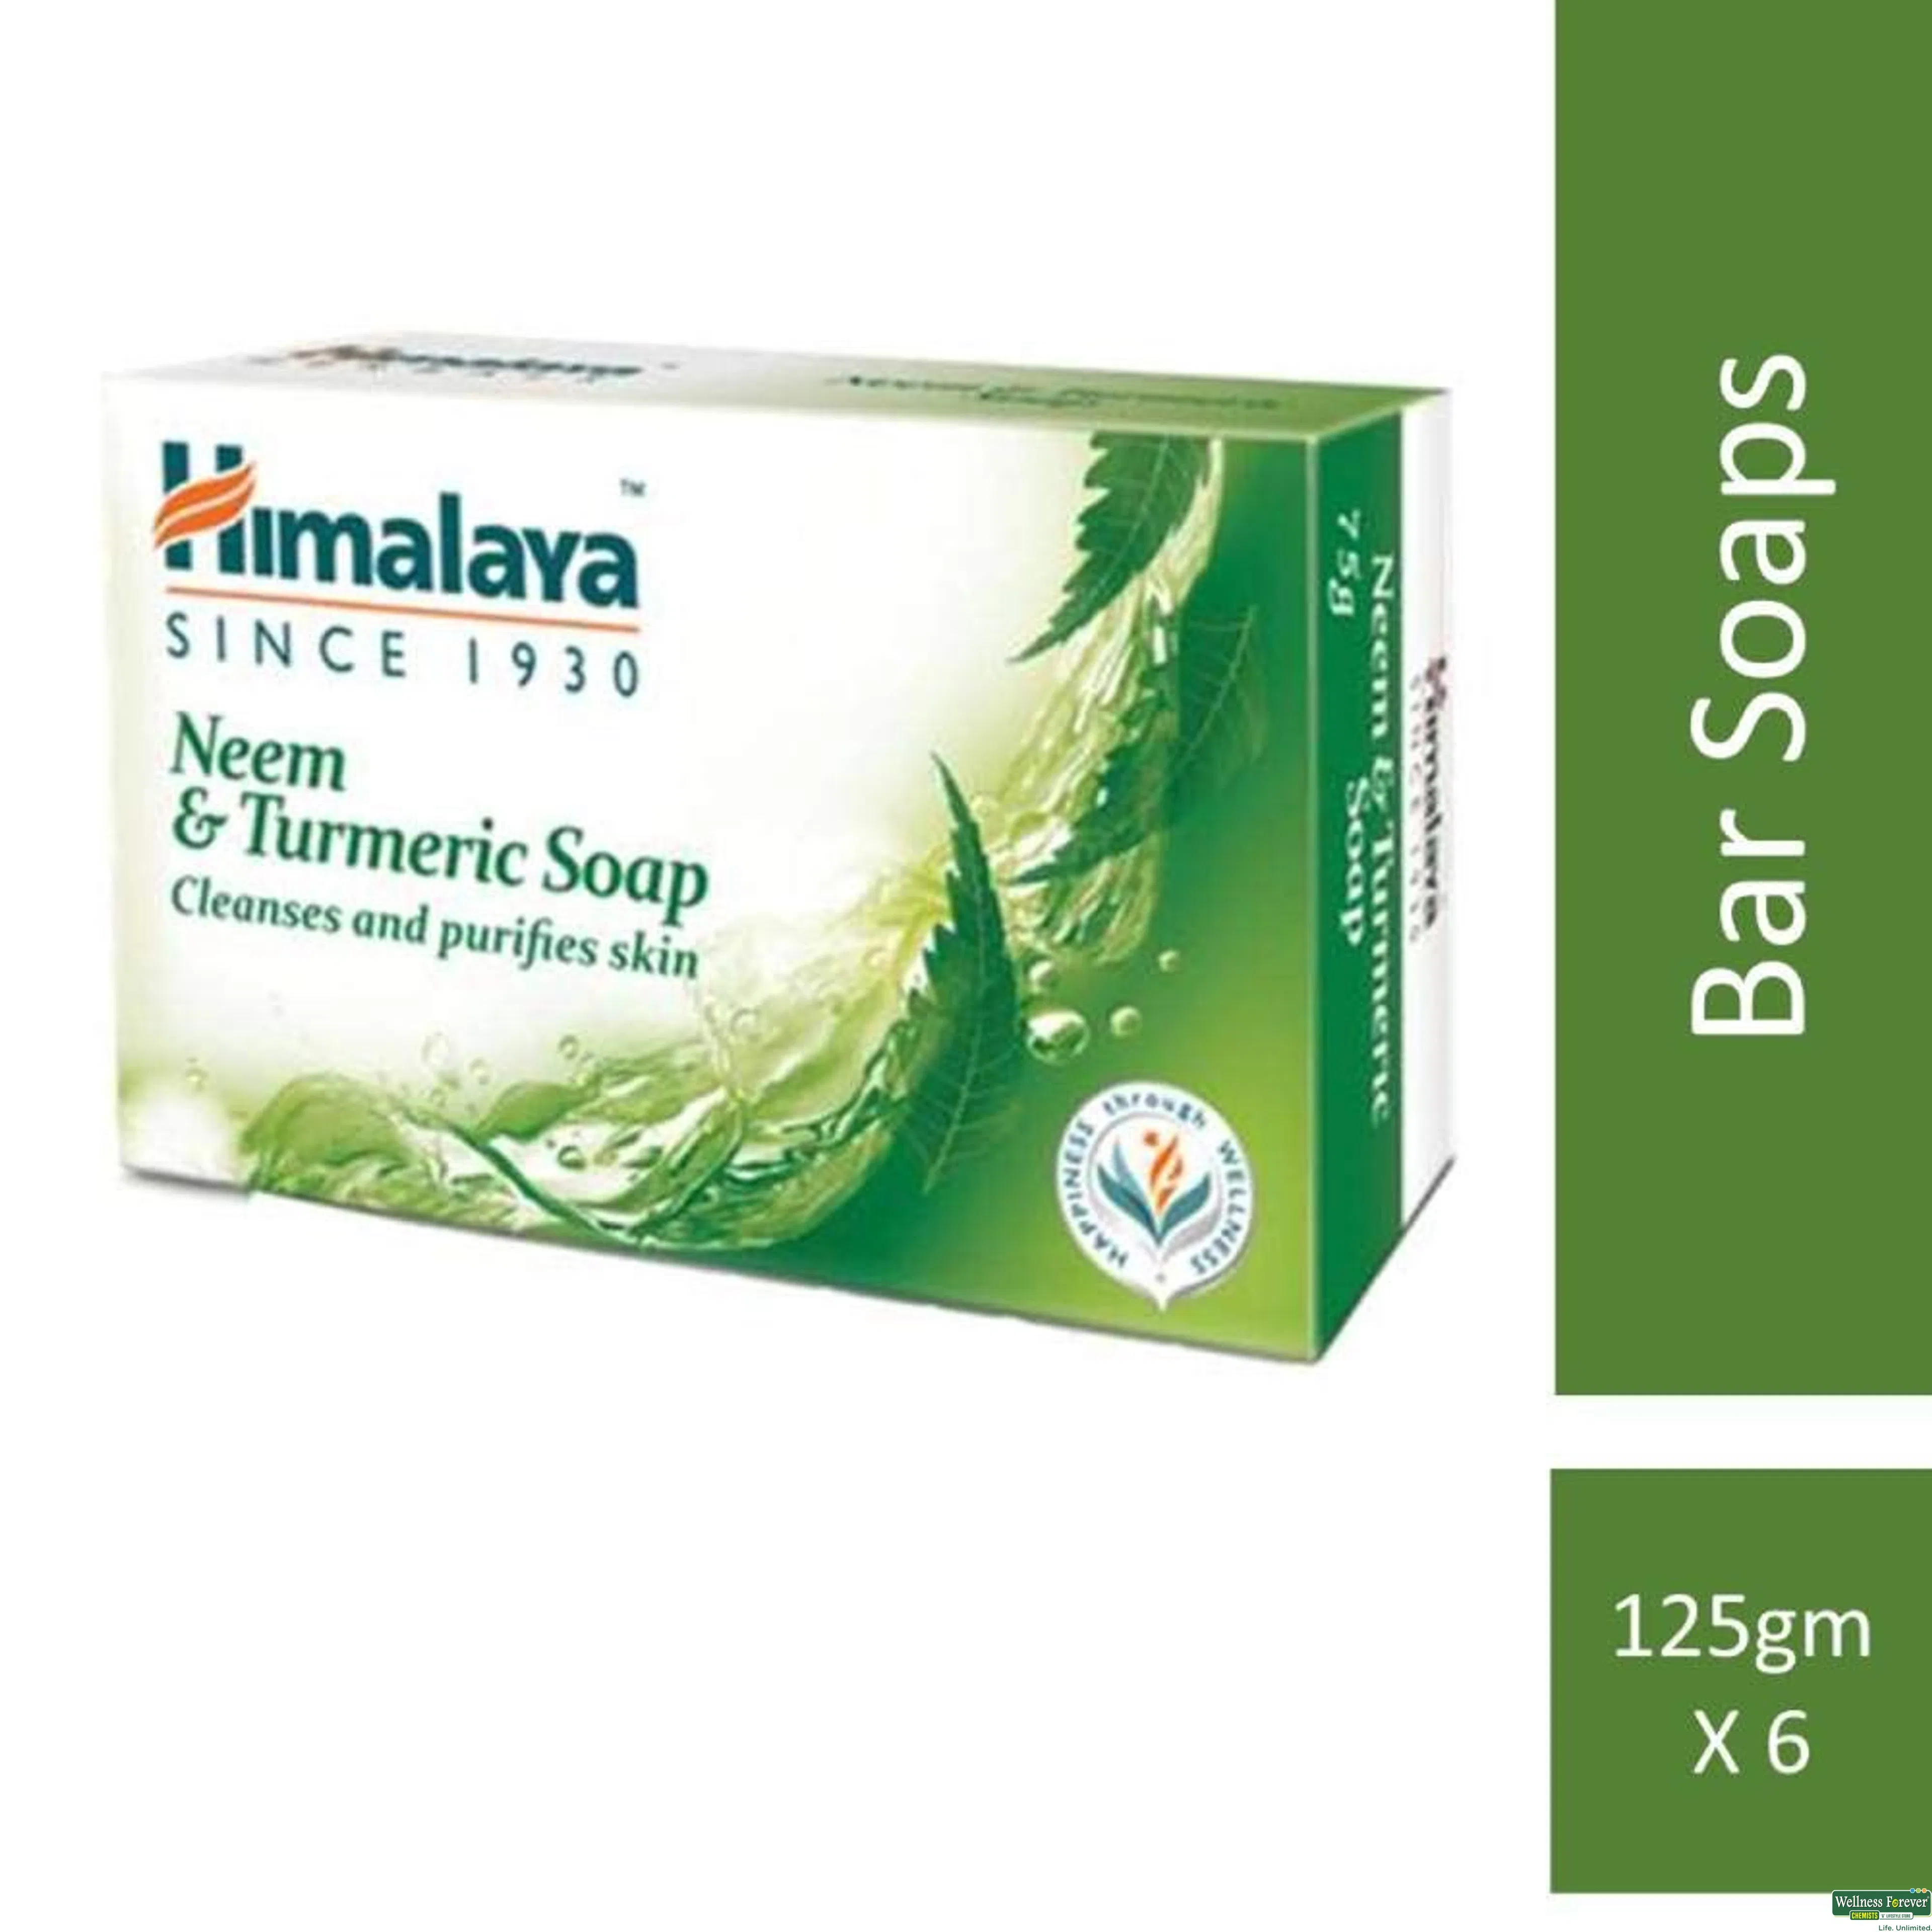 HIMA SOAP NEEM TURMERIC 125GM-image